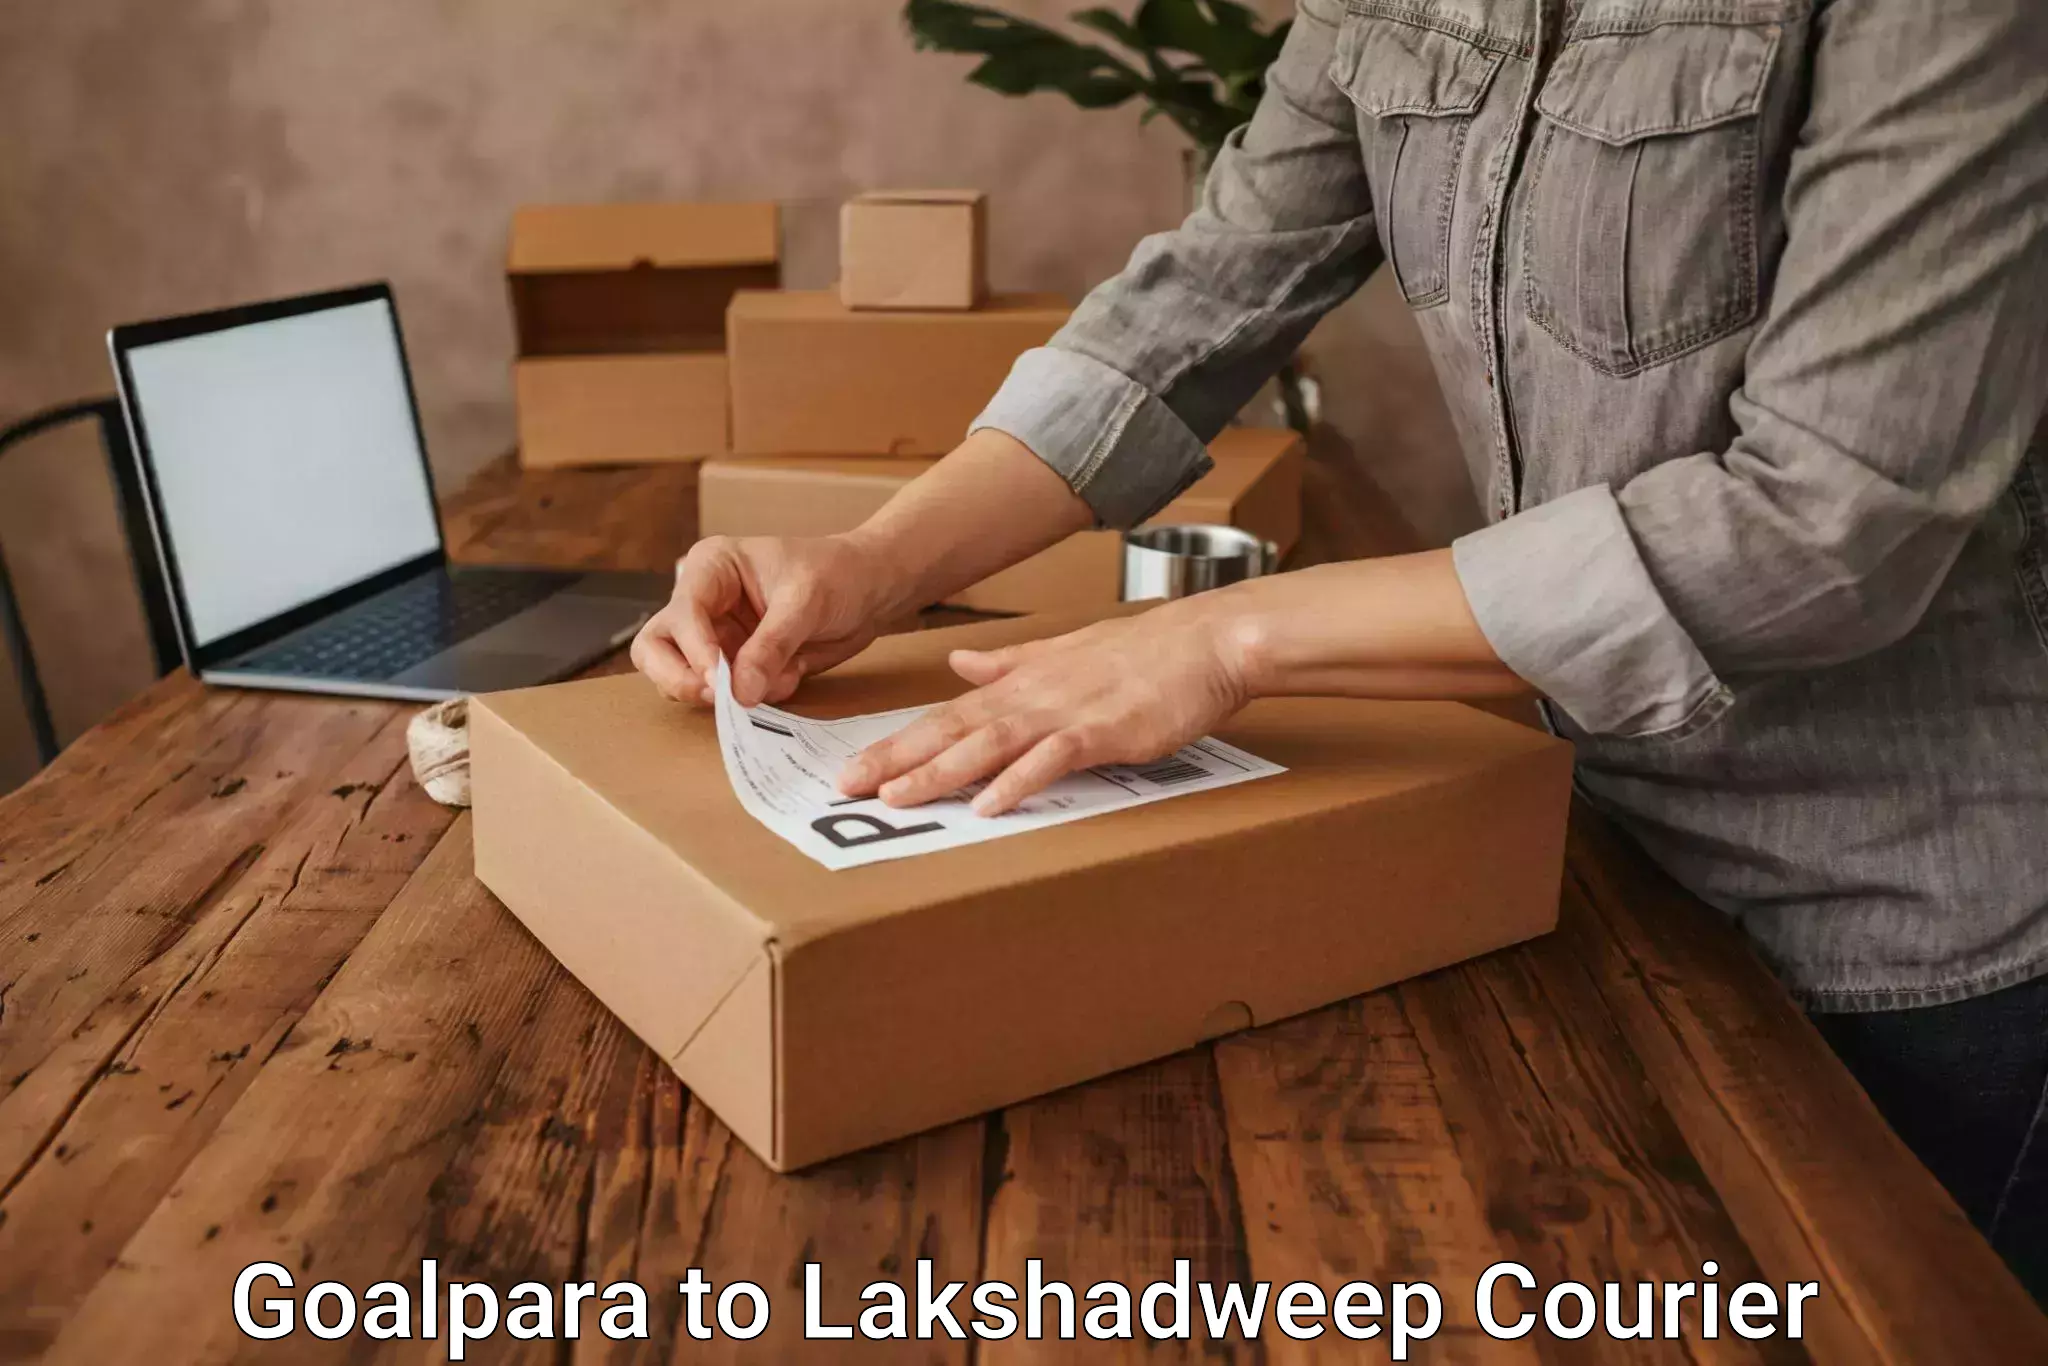 Advanced shipping network Goalpara to Lakshadweep